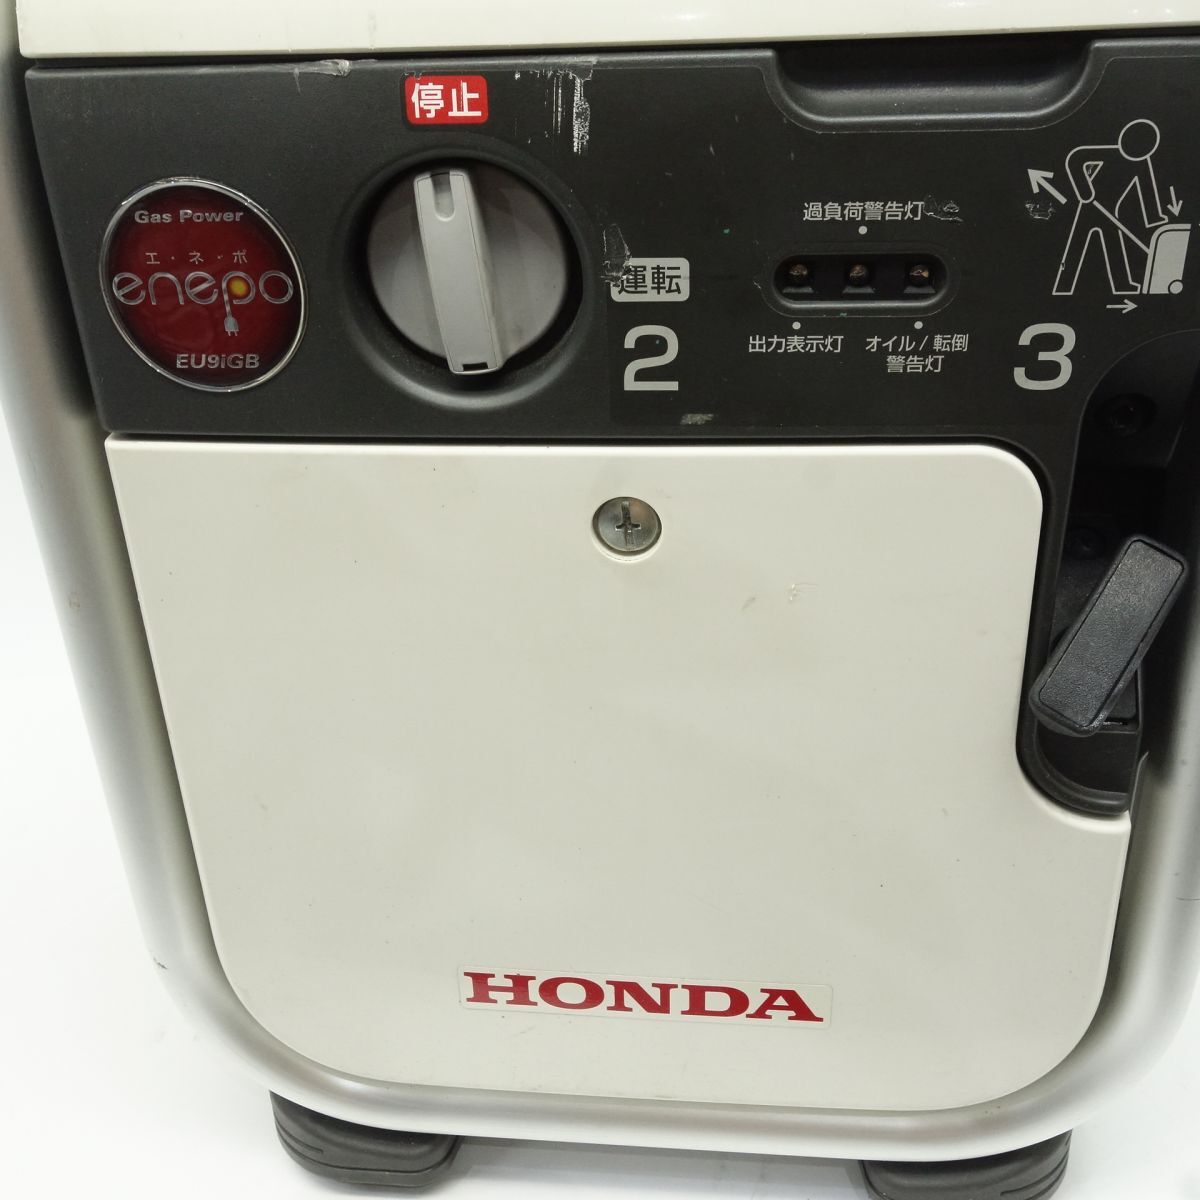 106 HONDA/ Honda газ баллон сжатого газа тип генератор enepoEU9iGB 900VA предотвращение бедствий для экстренных случаев источник питания * б/у 